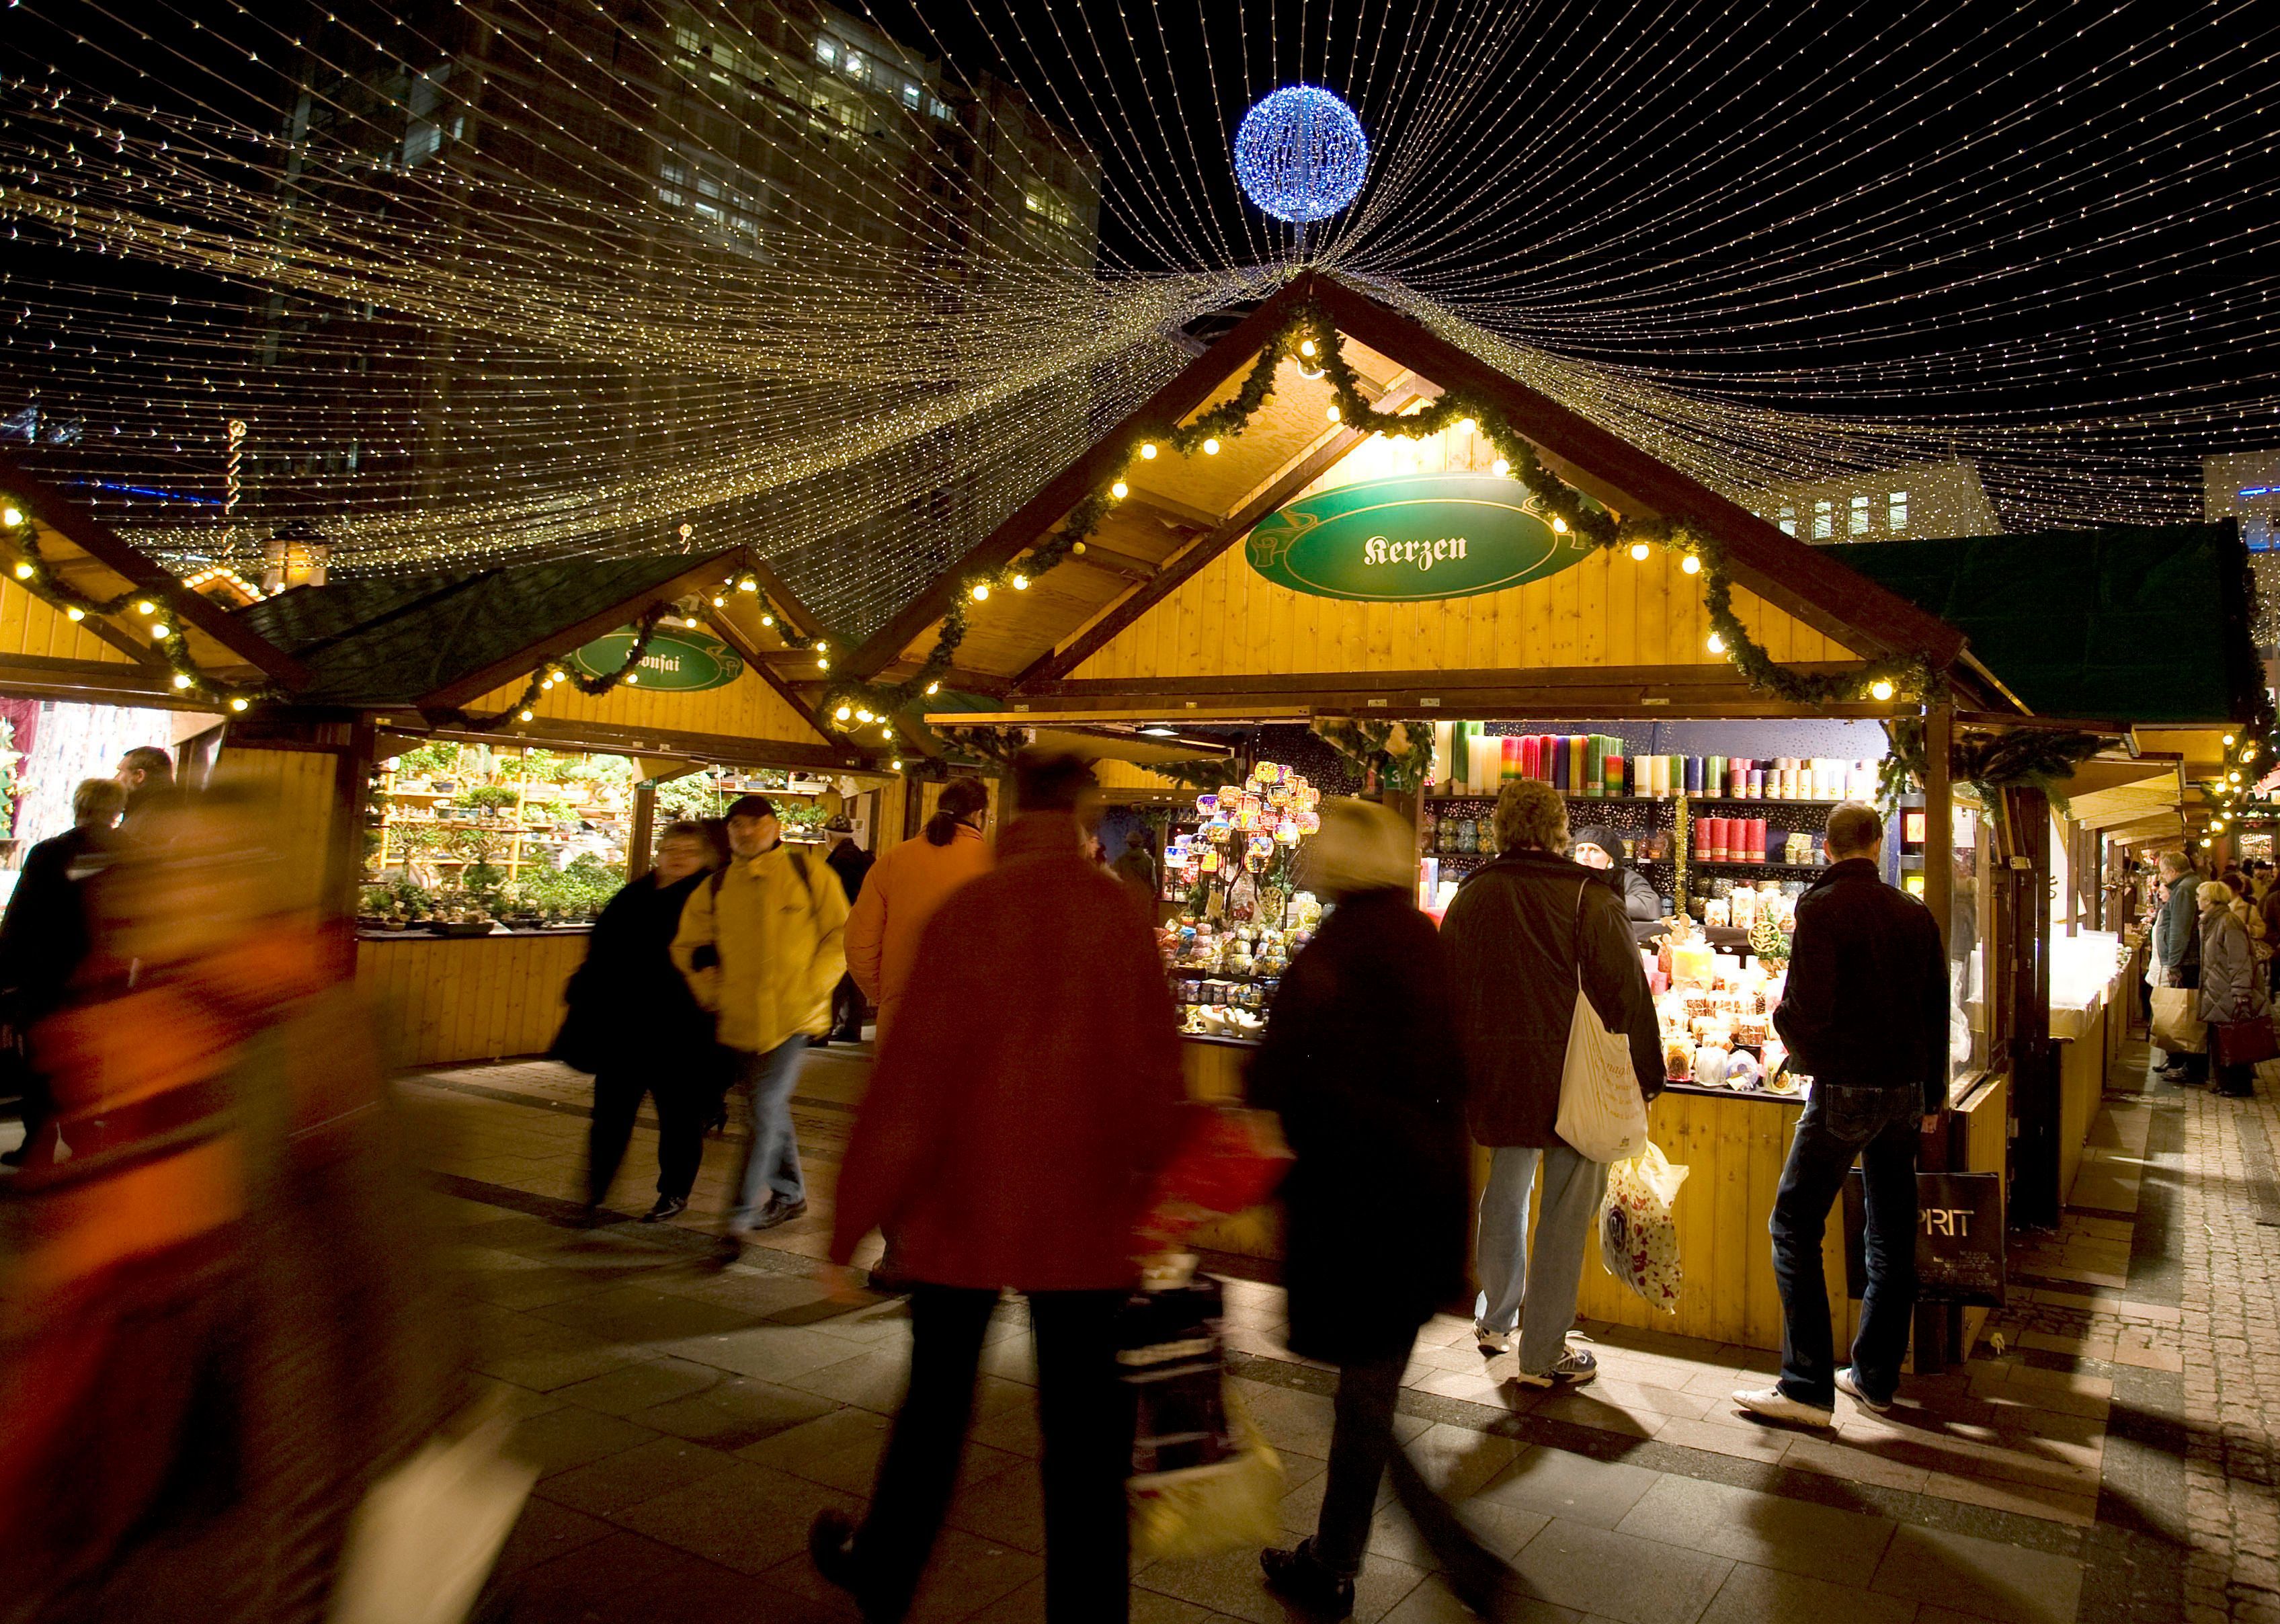 Platz 6: Auf dem sechsten Platz ist der Internationale Weihnachtsmarkt in Essen auf dem Kennedy Platz. Der Weihnachtsmarkt gilt als einer der größten und schönsten in Deutschland und Europa.